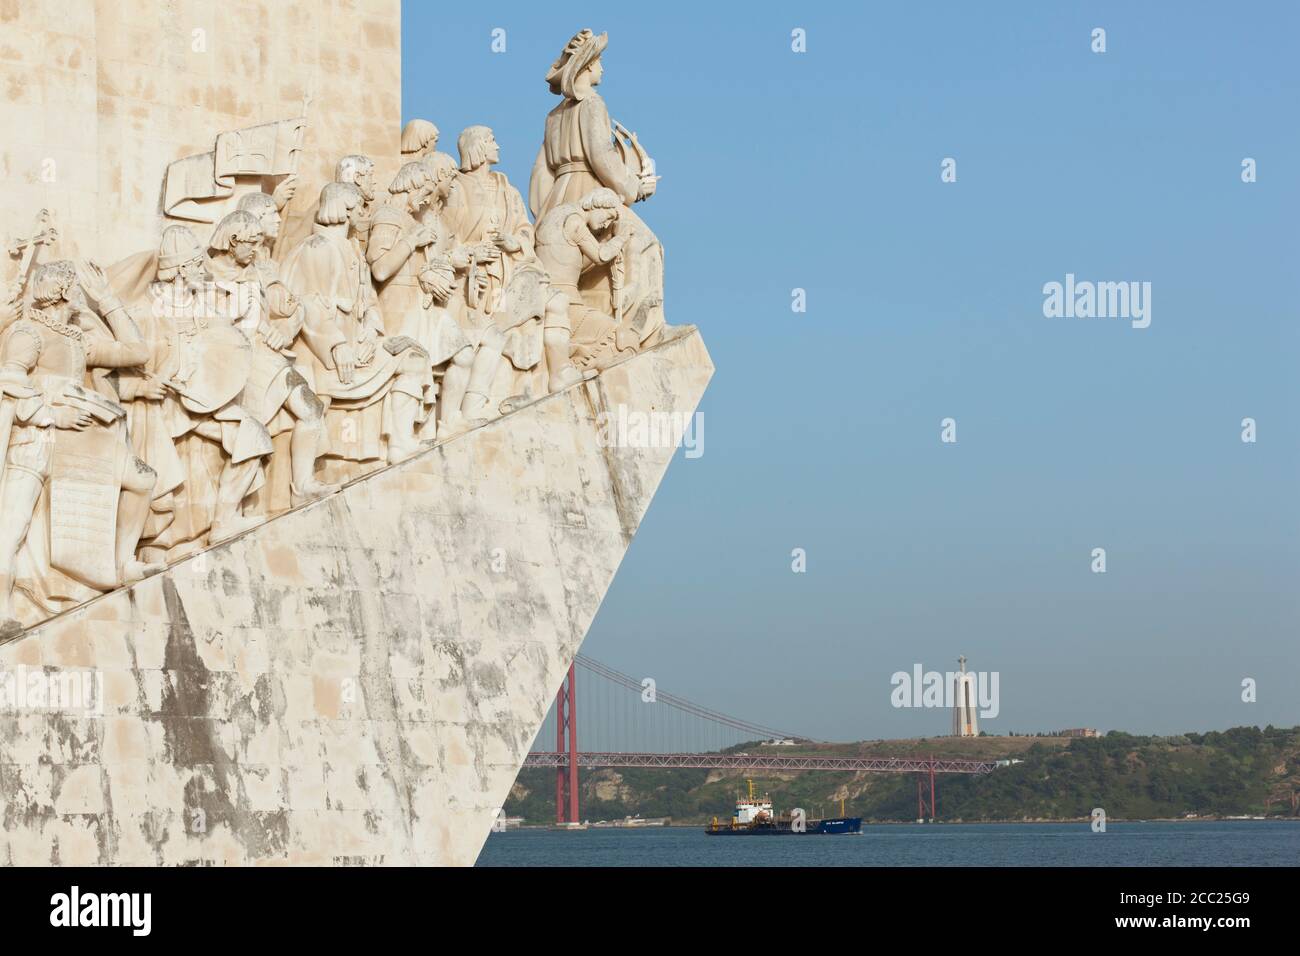 Europe, Portugal, Lisbonne, Belem, Padrao dos Descobrimentos, vue de la sculpture monumentale des marins portugais près du Tage Banque D'Images